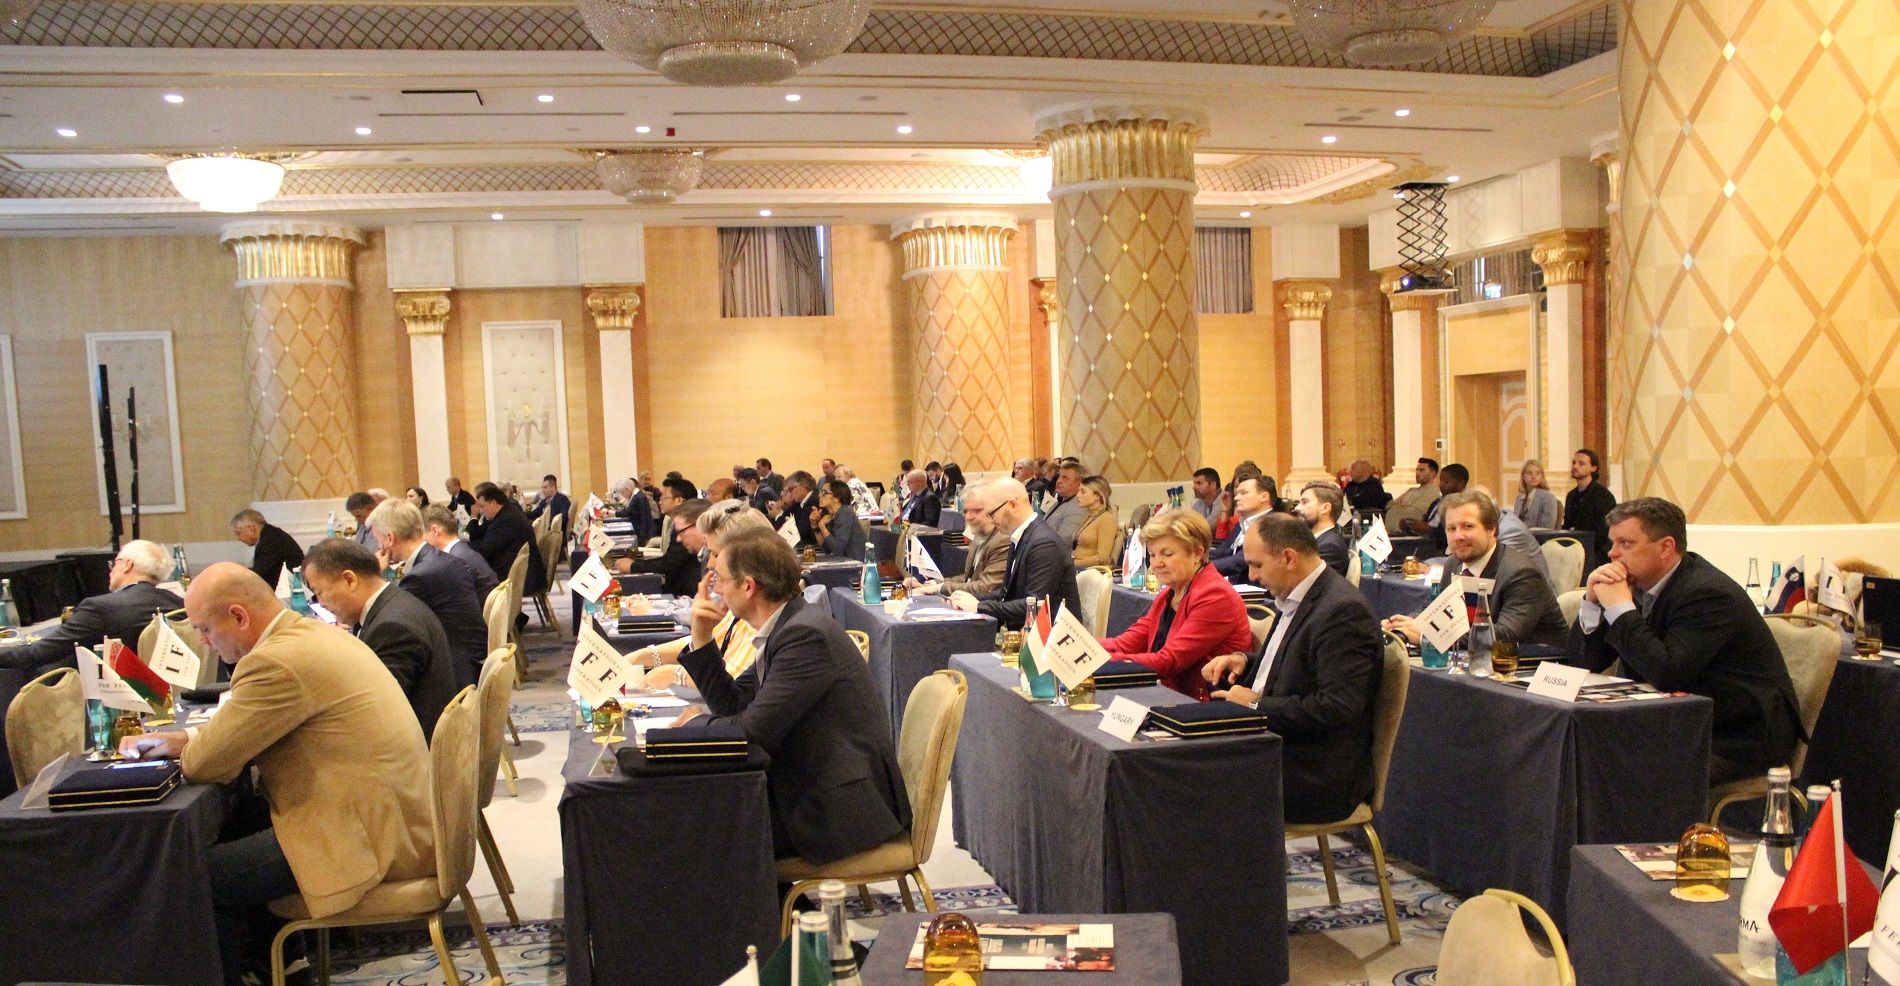 IFF AGM COUNCIL-2019 Türkiye'nin ev sahipliğinde İstanbul'da yapıldı.